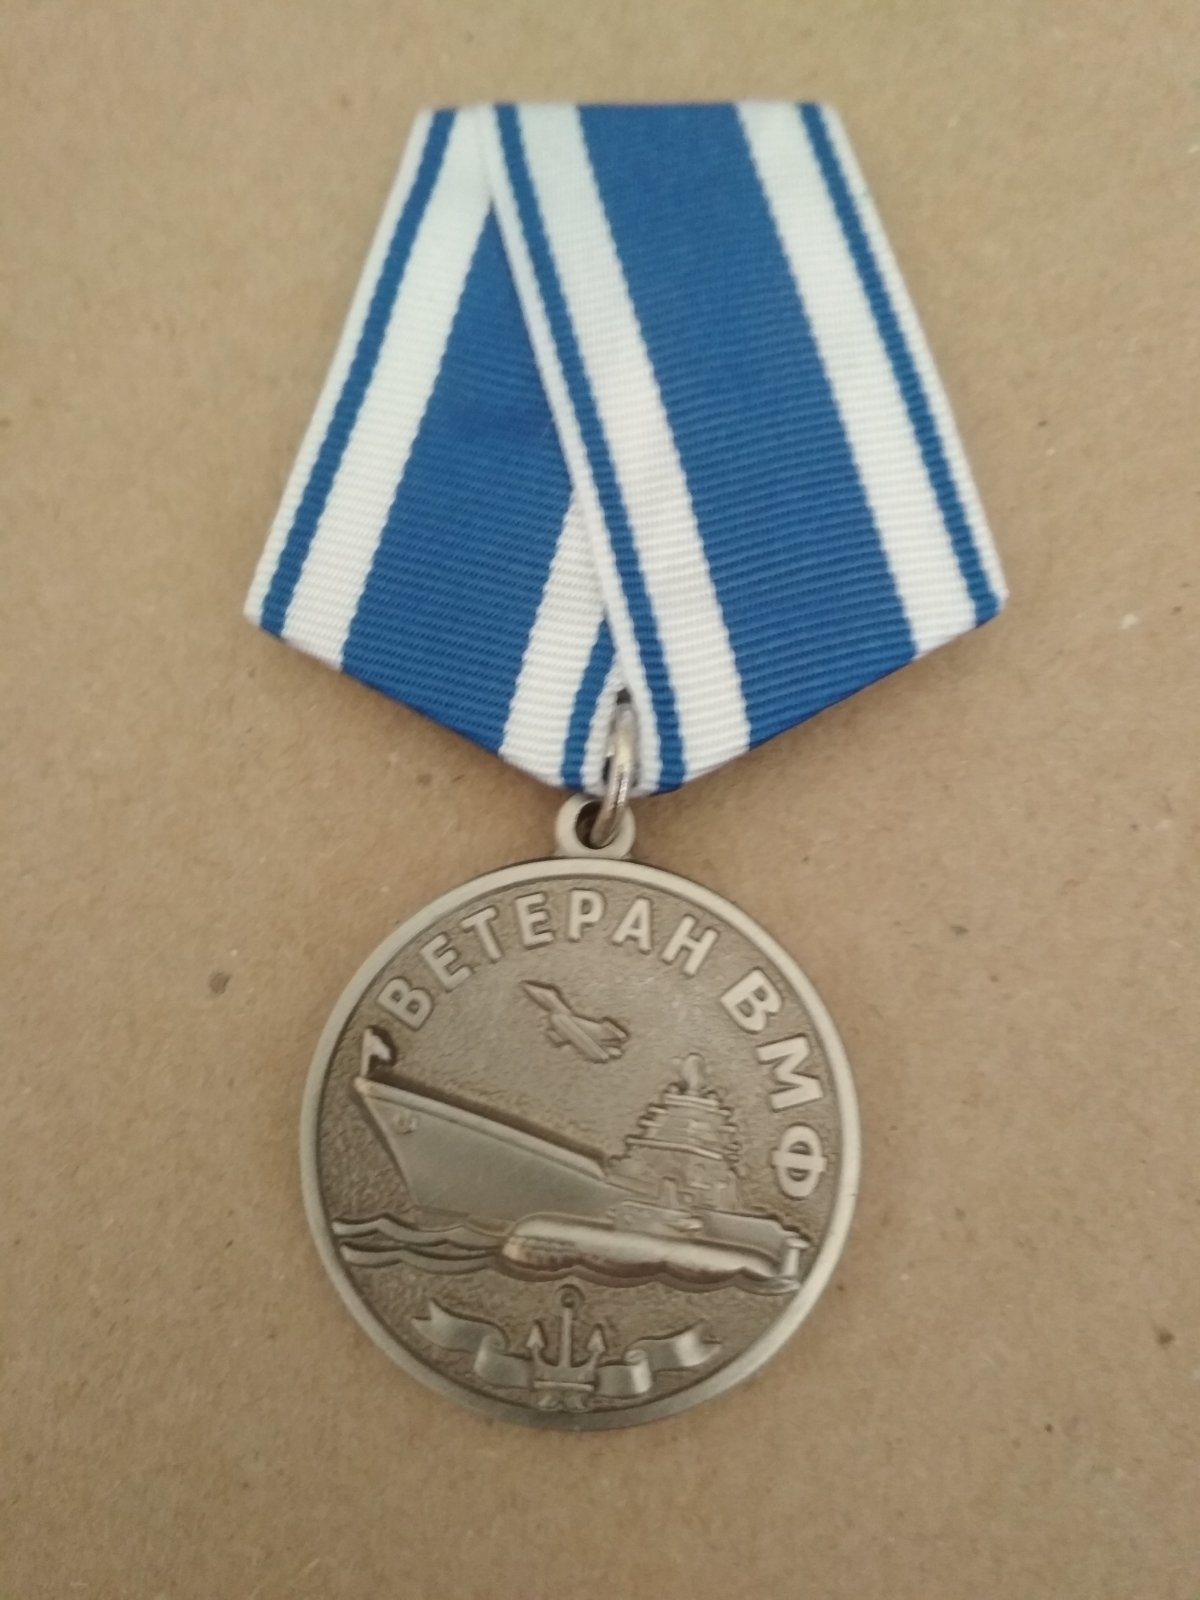 Памятная медаль "Ветеран ВМФ. За службу отечеству на морях"